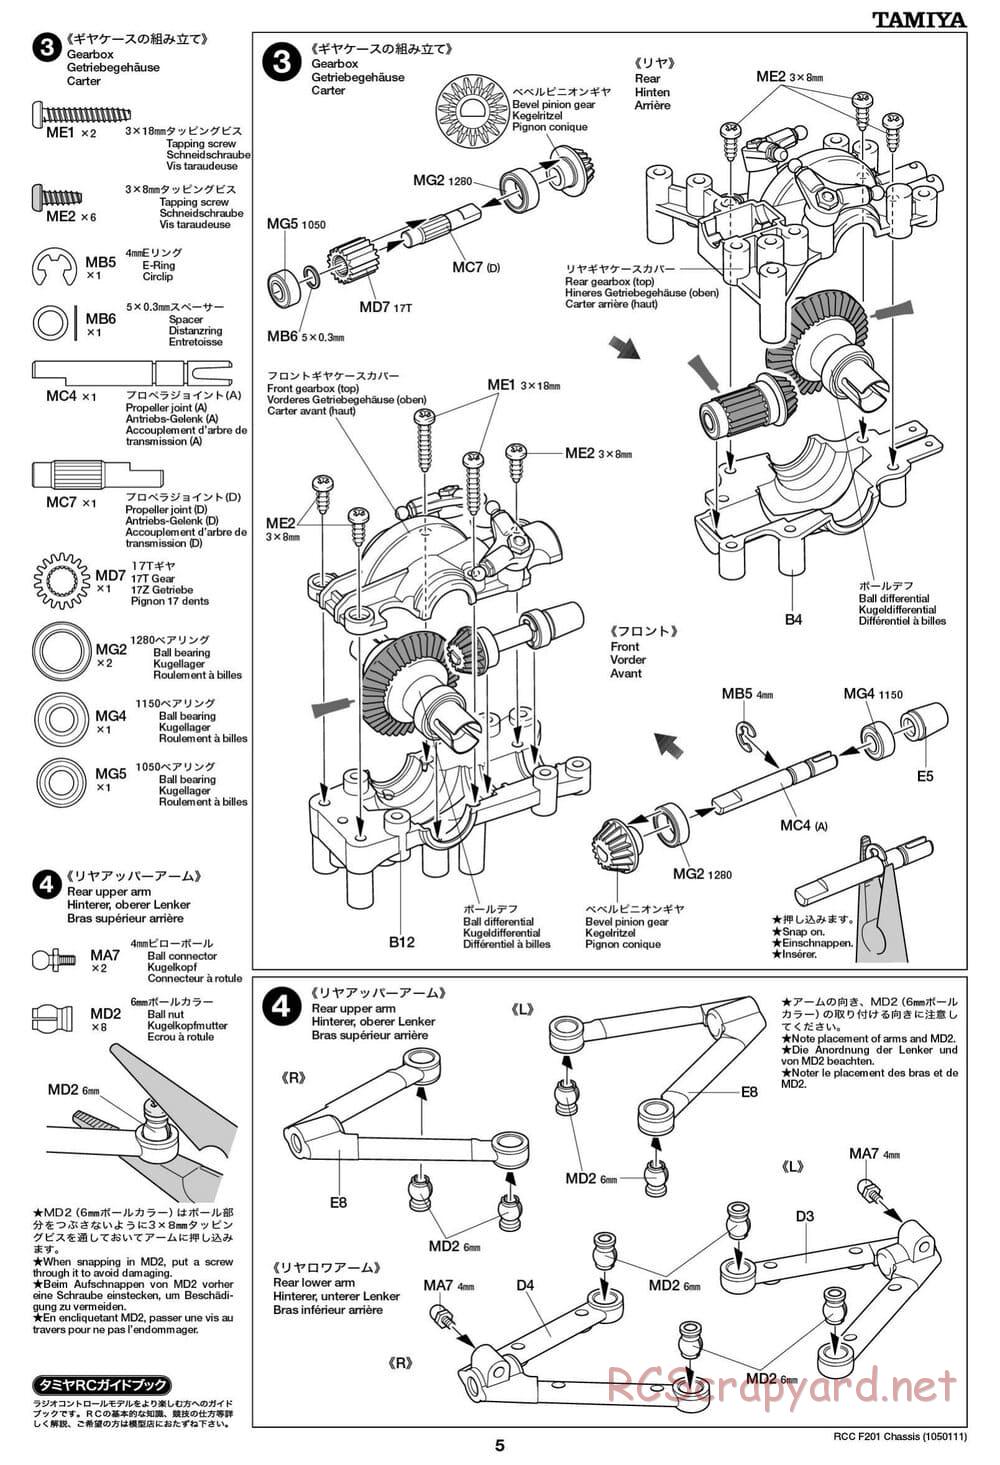 Tamiya - F201 Chassis - Manual - Page 5